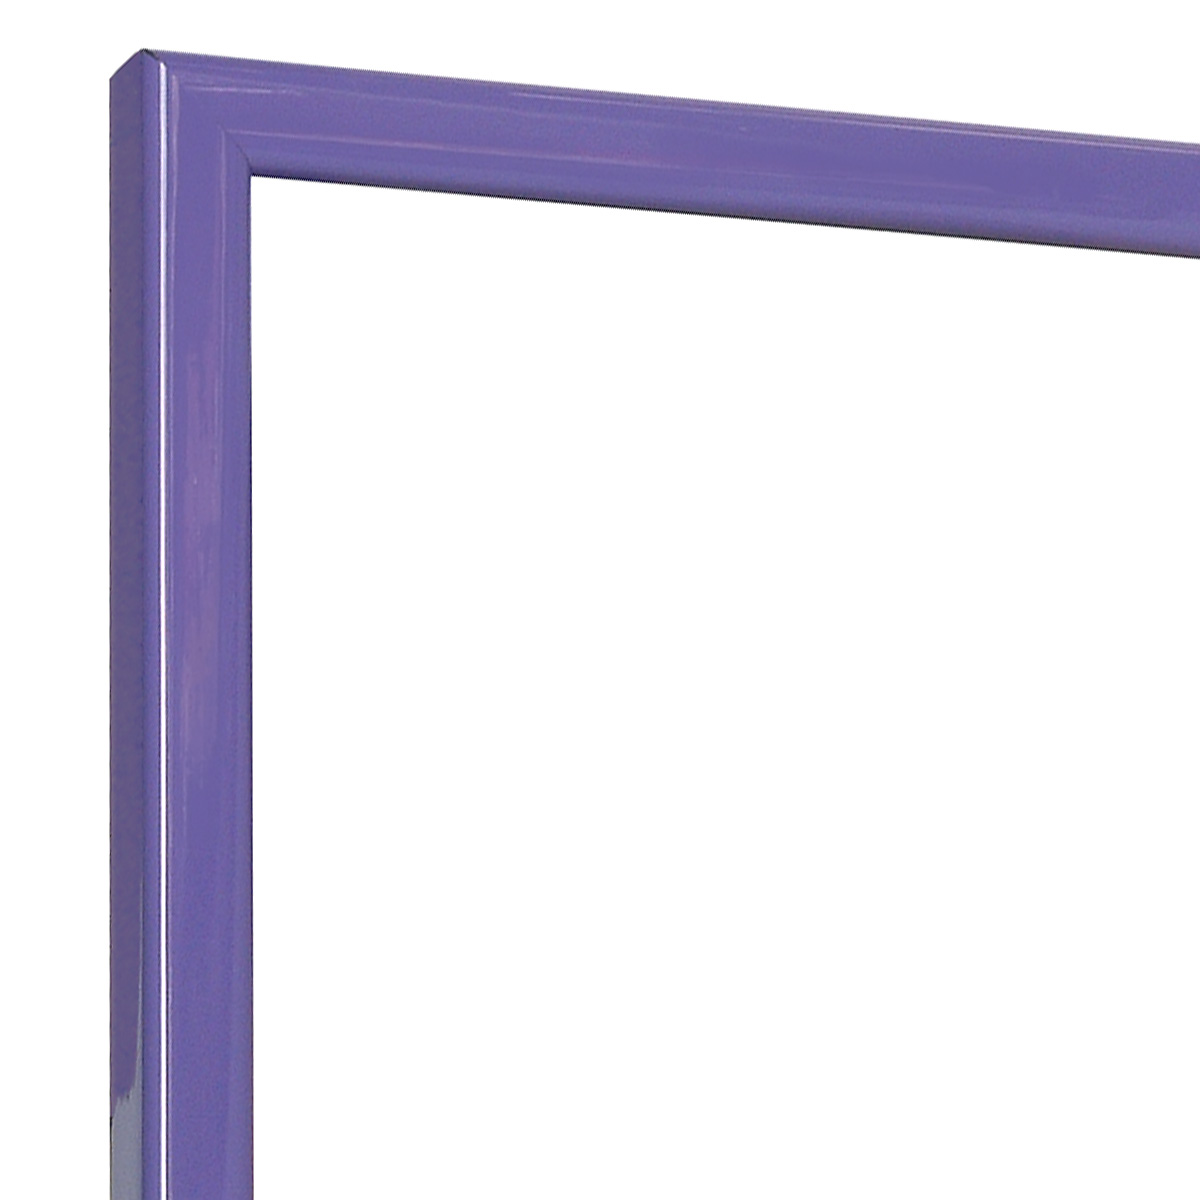 Bilderleiste keilgezinkte Pinie 14 mm breit - violett glänzend - Ecke